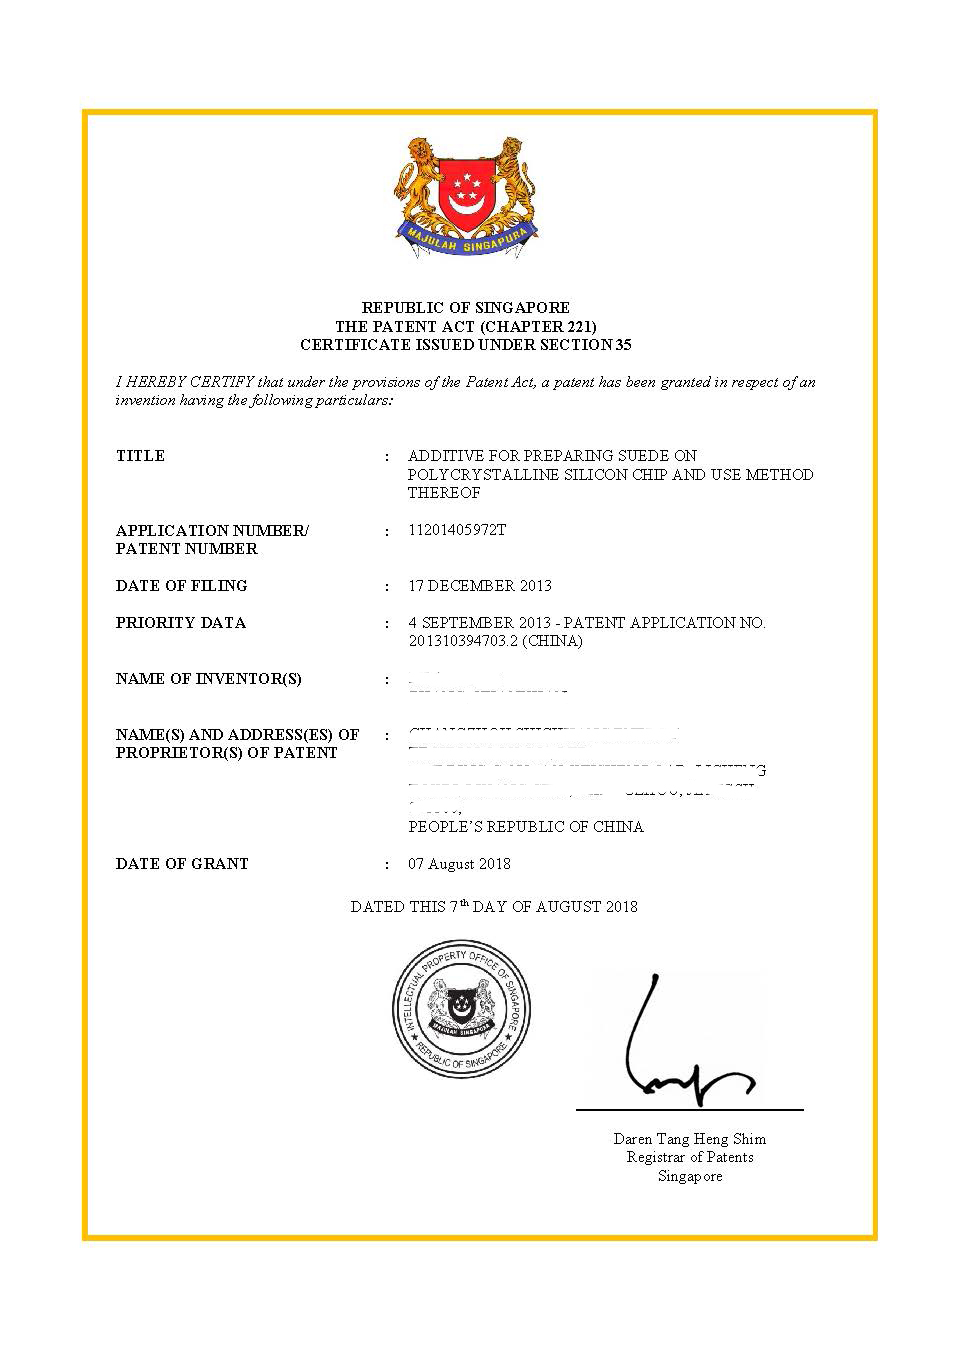 SP-006348 (Certificate of Grant) - 放网站证书.jpg